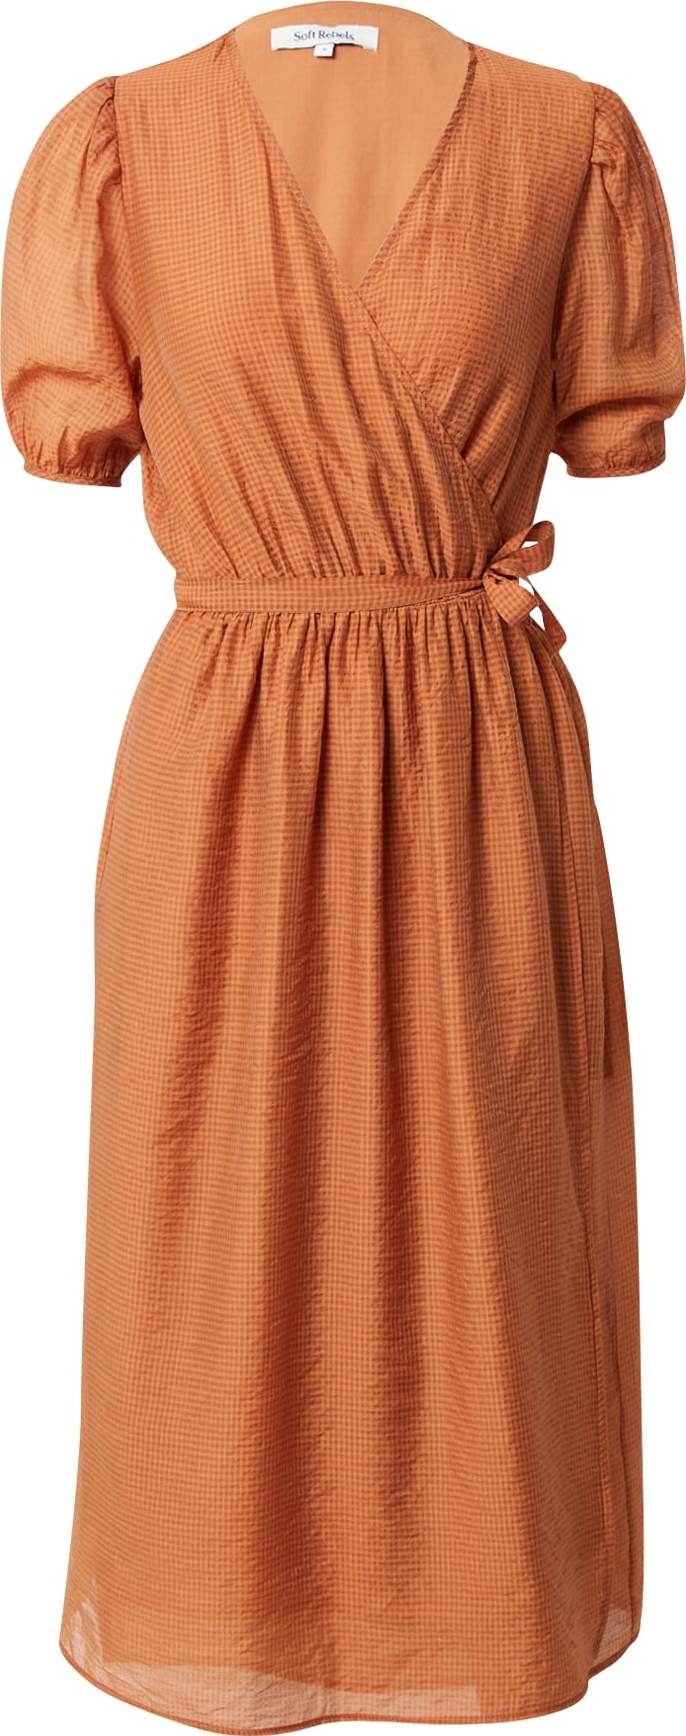 Soft Rebels Košilové šaty 'Alani' oranžová